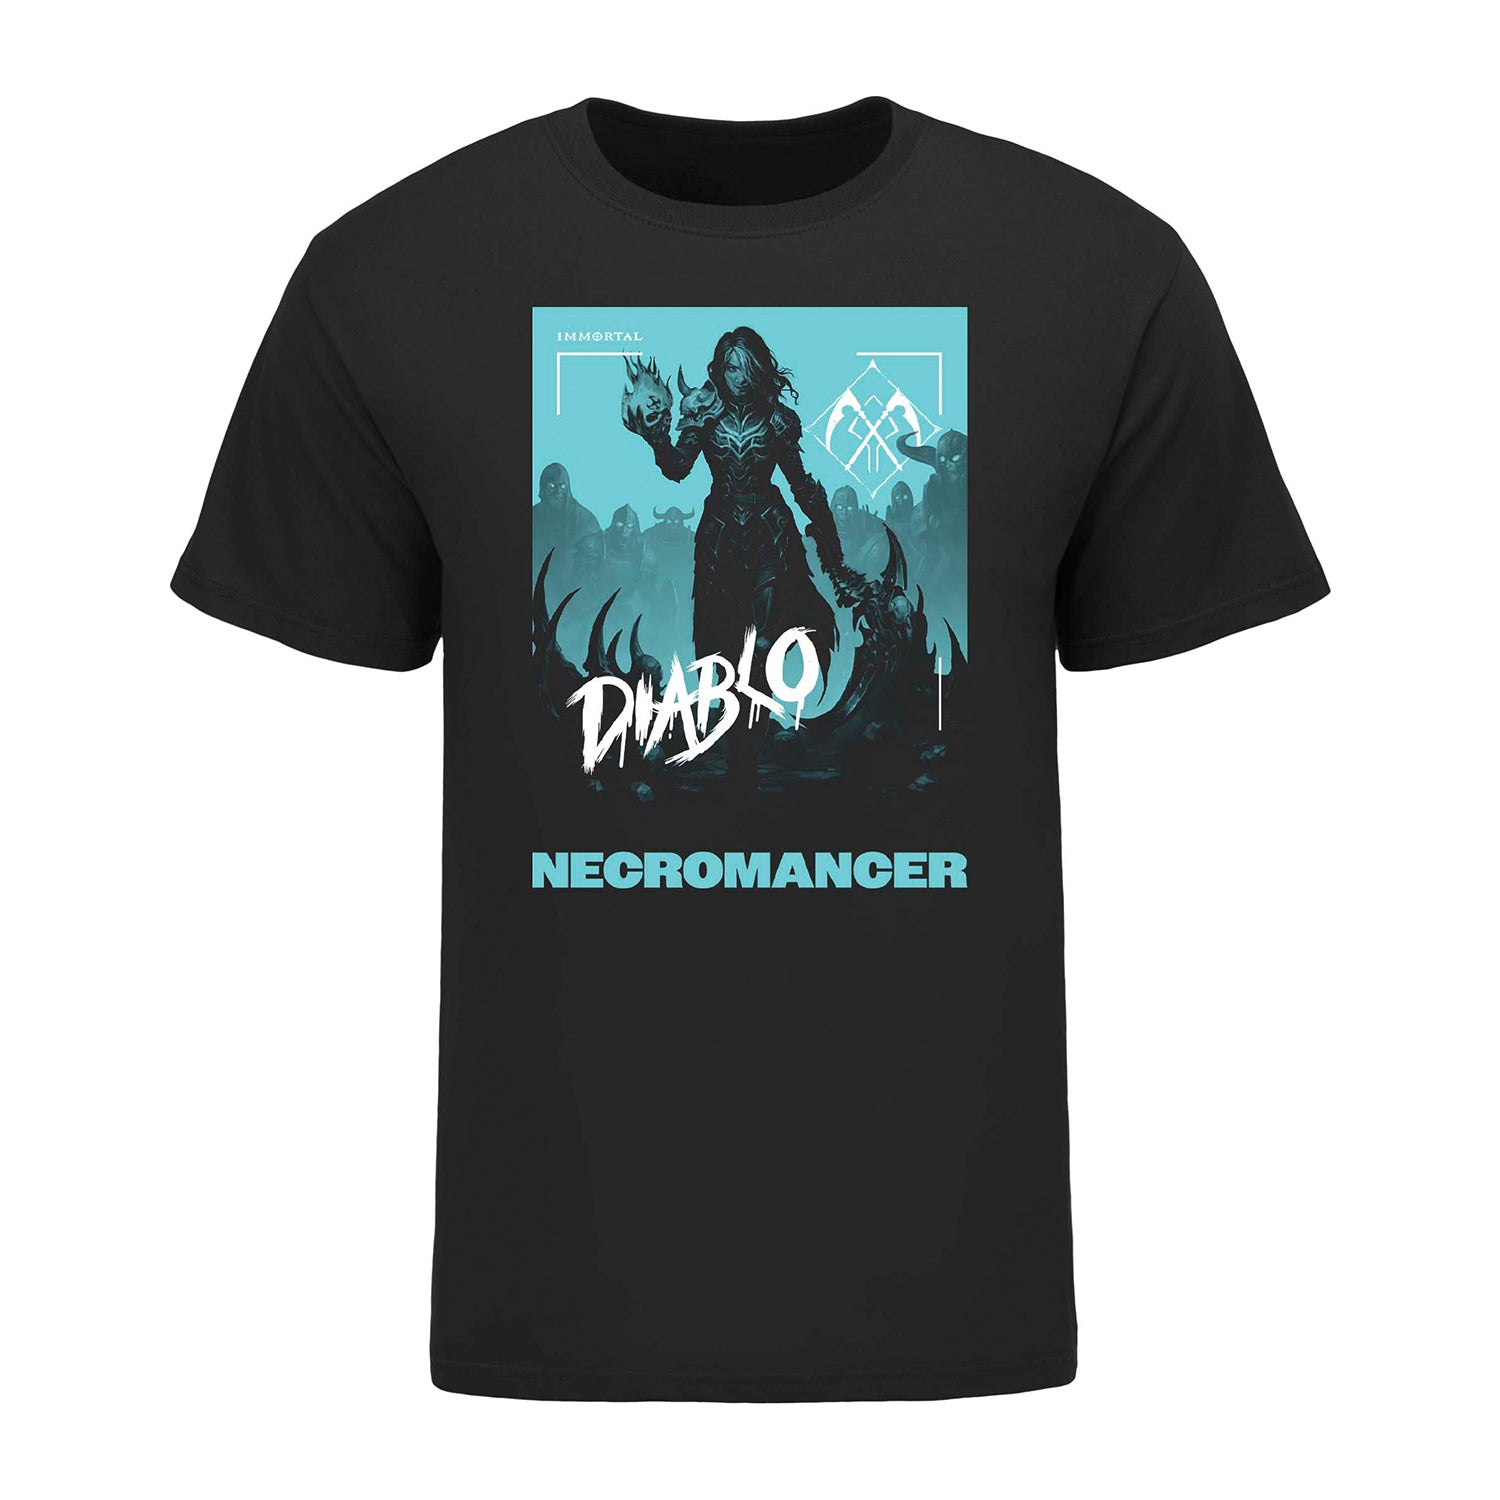 Diablo Immortal Necromancer High Contrast Black T-Shirt - Front View